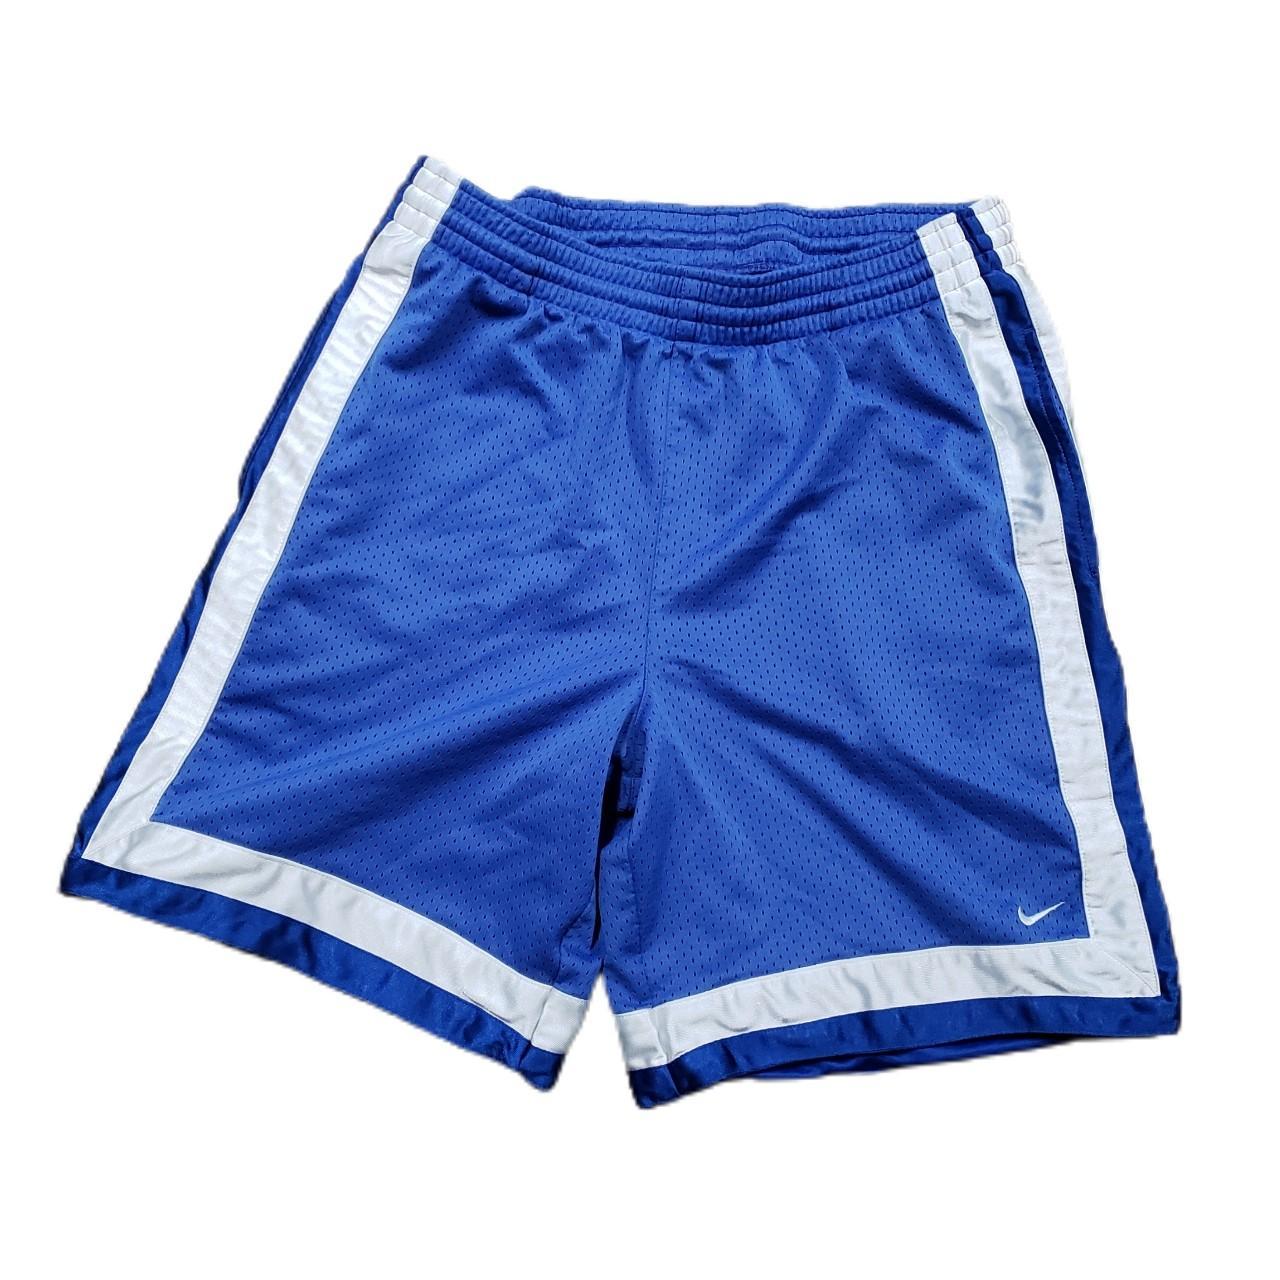 Product Image 1 - Men's Y2K Nike Shorts 

Size: